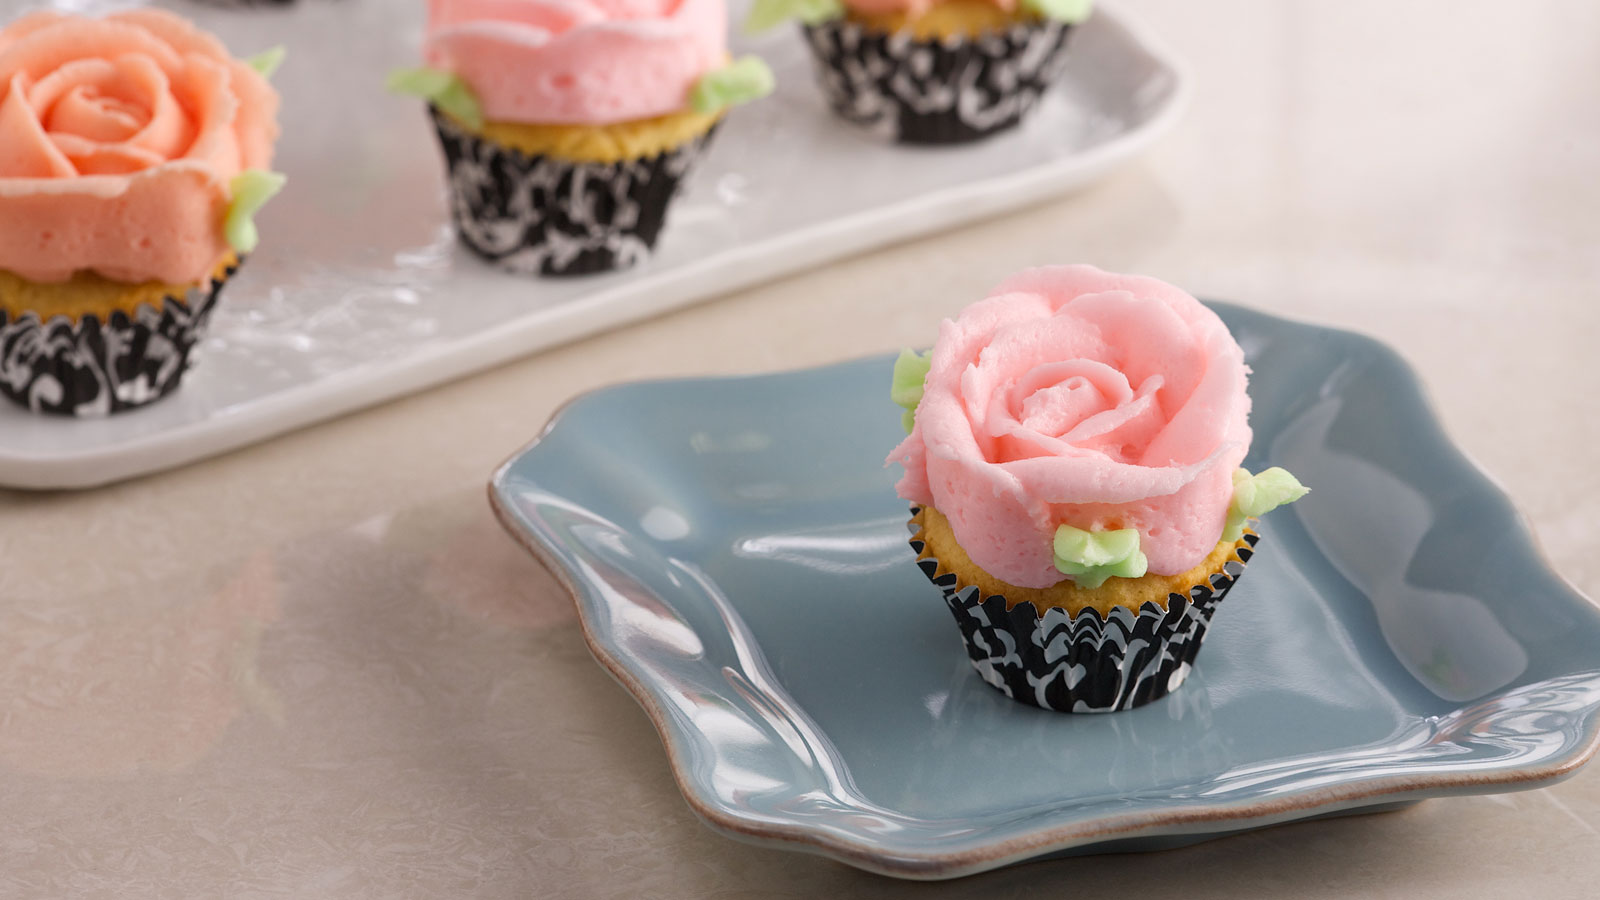 Minicupcakes de vainilla decorados con crema de mantequilla (Flourless mini  vanilla cupcakes) - Anna Olson - Receta - Canal Cocina